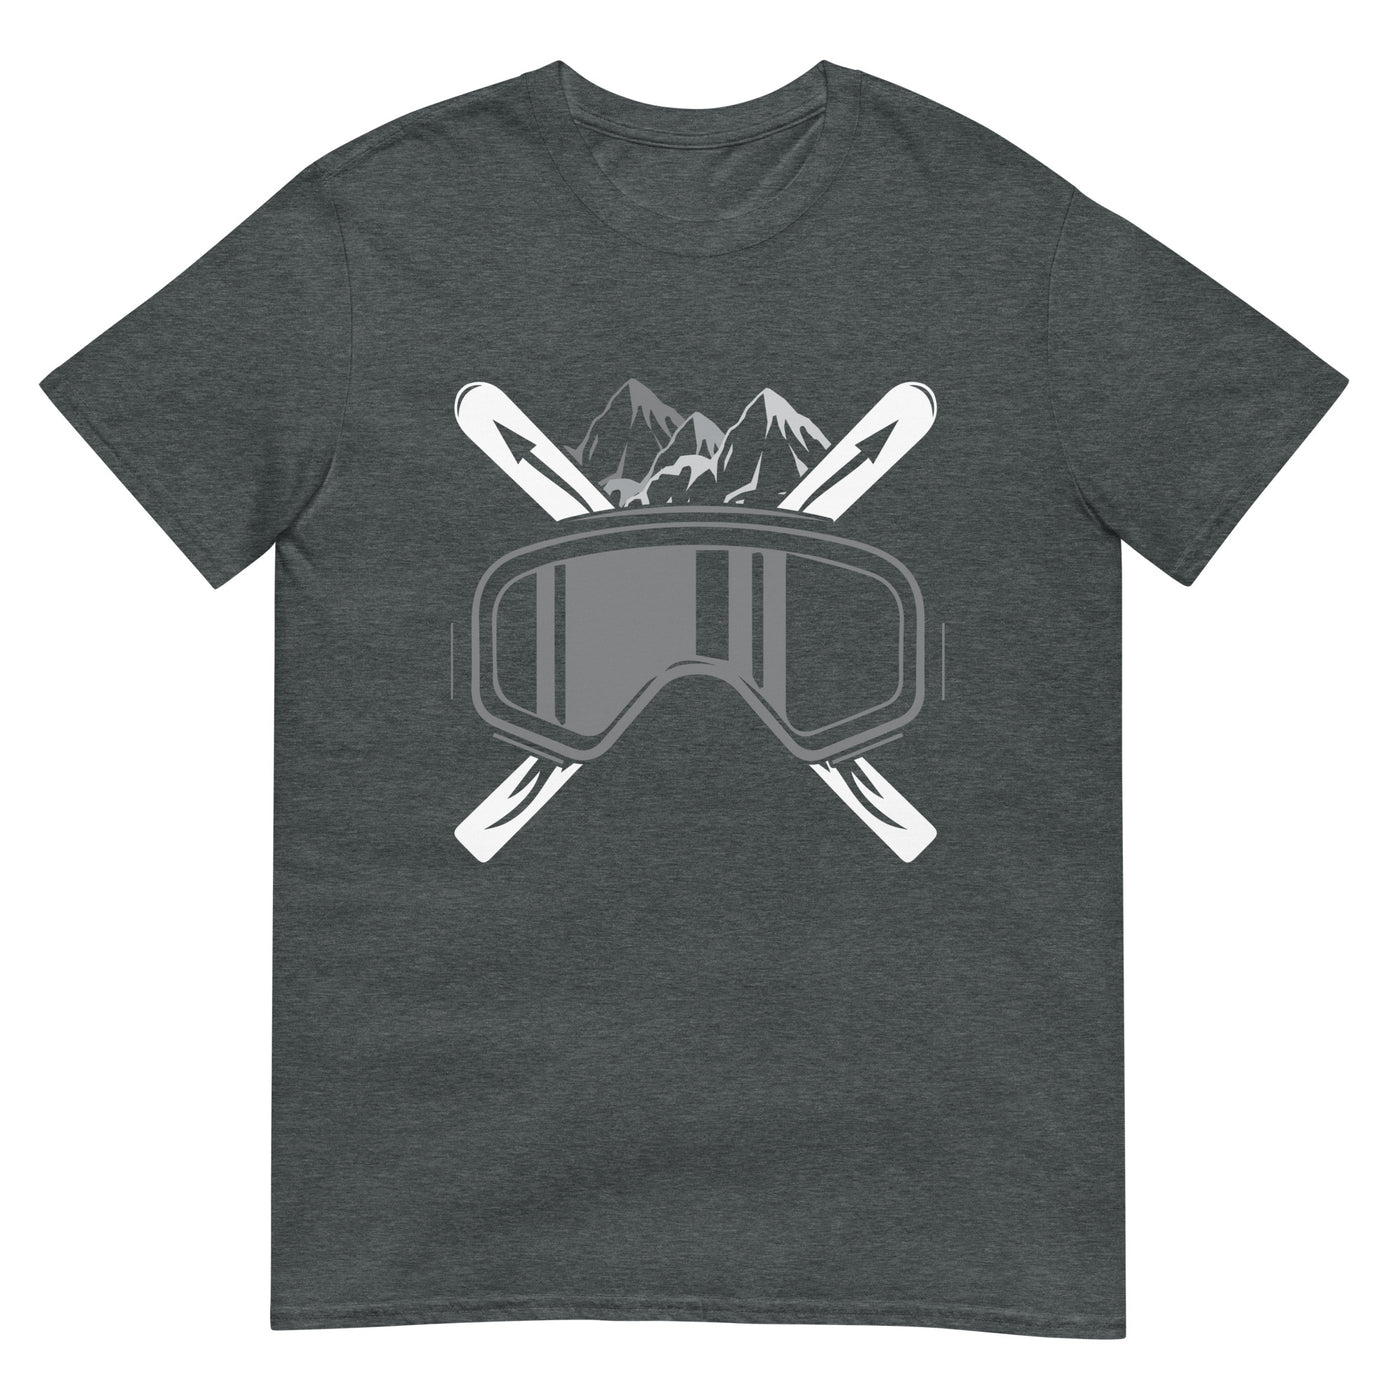 Schifoan - T-Shirt (Unisex) klettern ski xxx yyy zzz Dark Heather